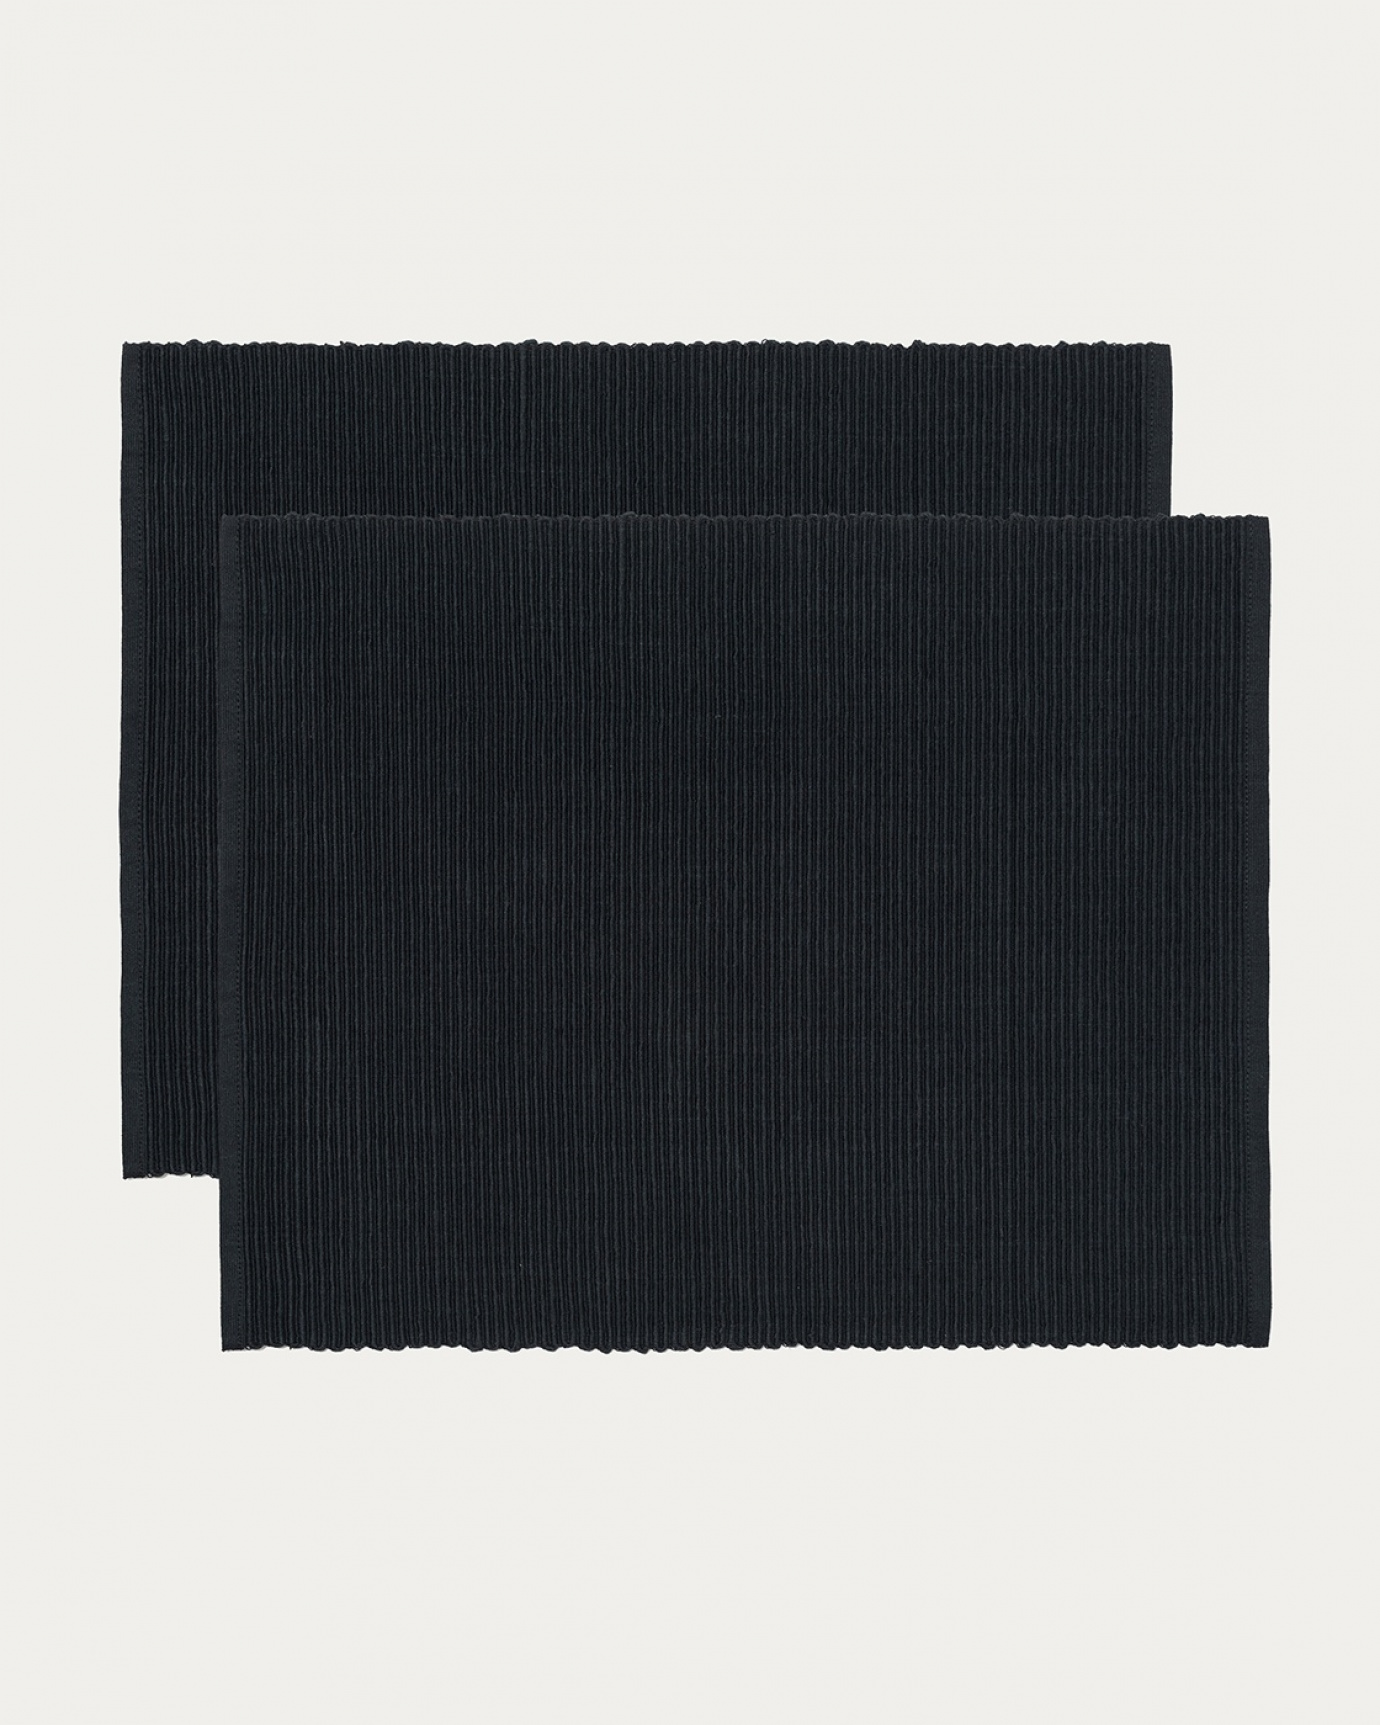 Immagine prodotto nero tovaglietta UNI in morbido cotone a costine di qualità di LINUM DESIGN. Dimensioni 35x46 cm e venduto in 2-pezzi.